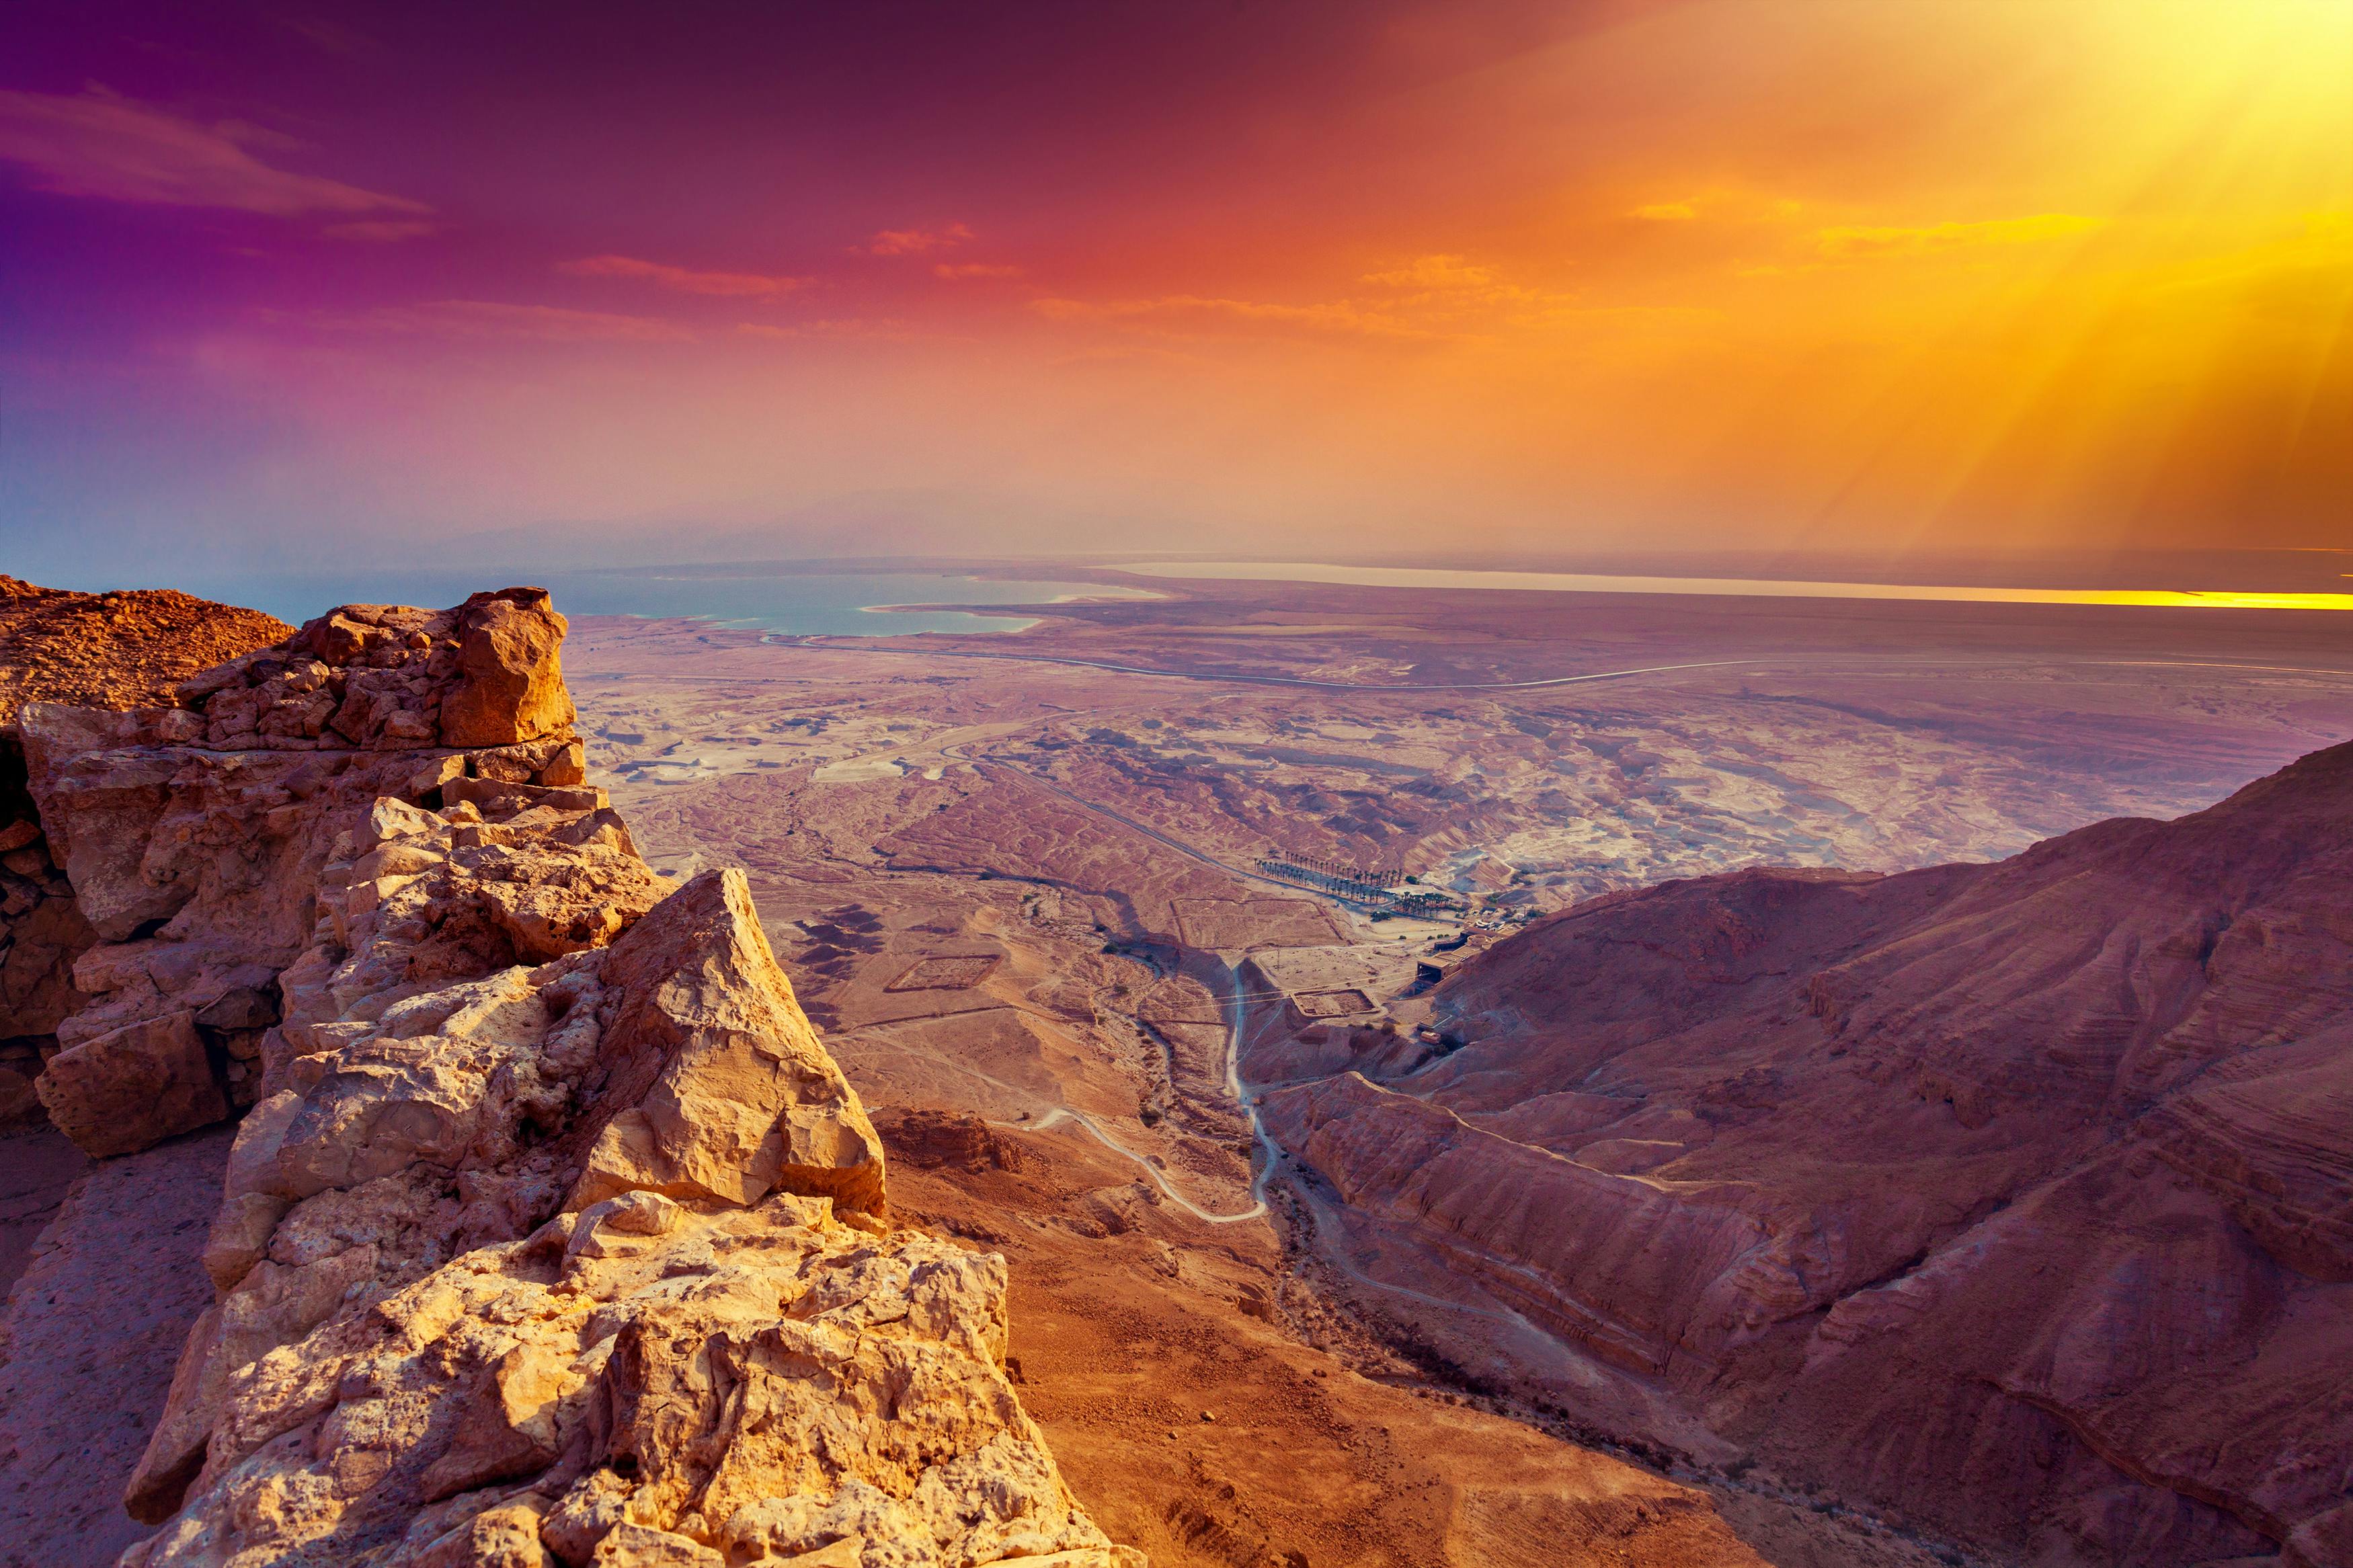 Excursão ao nascer do sol em Masada saindo de Tel Aviv